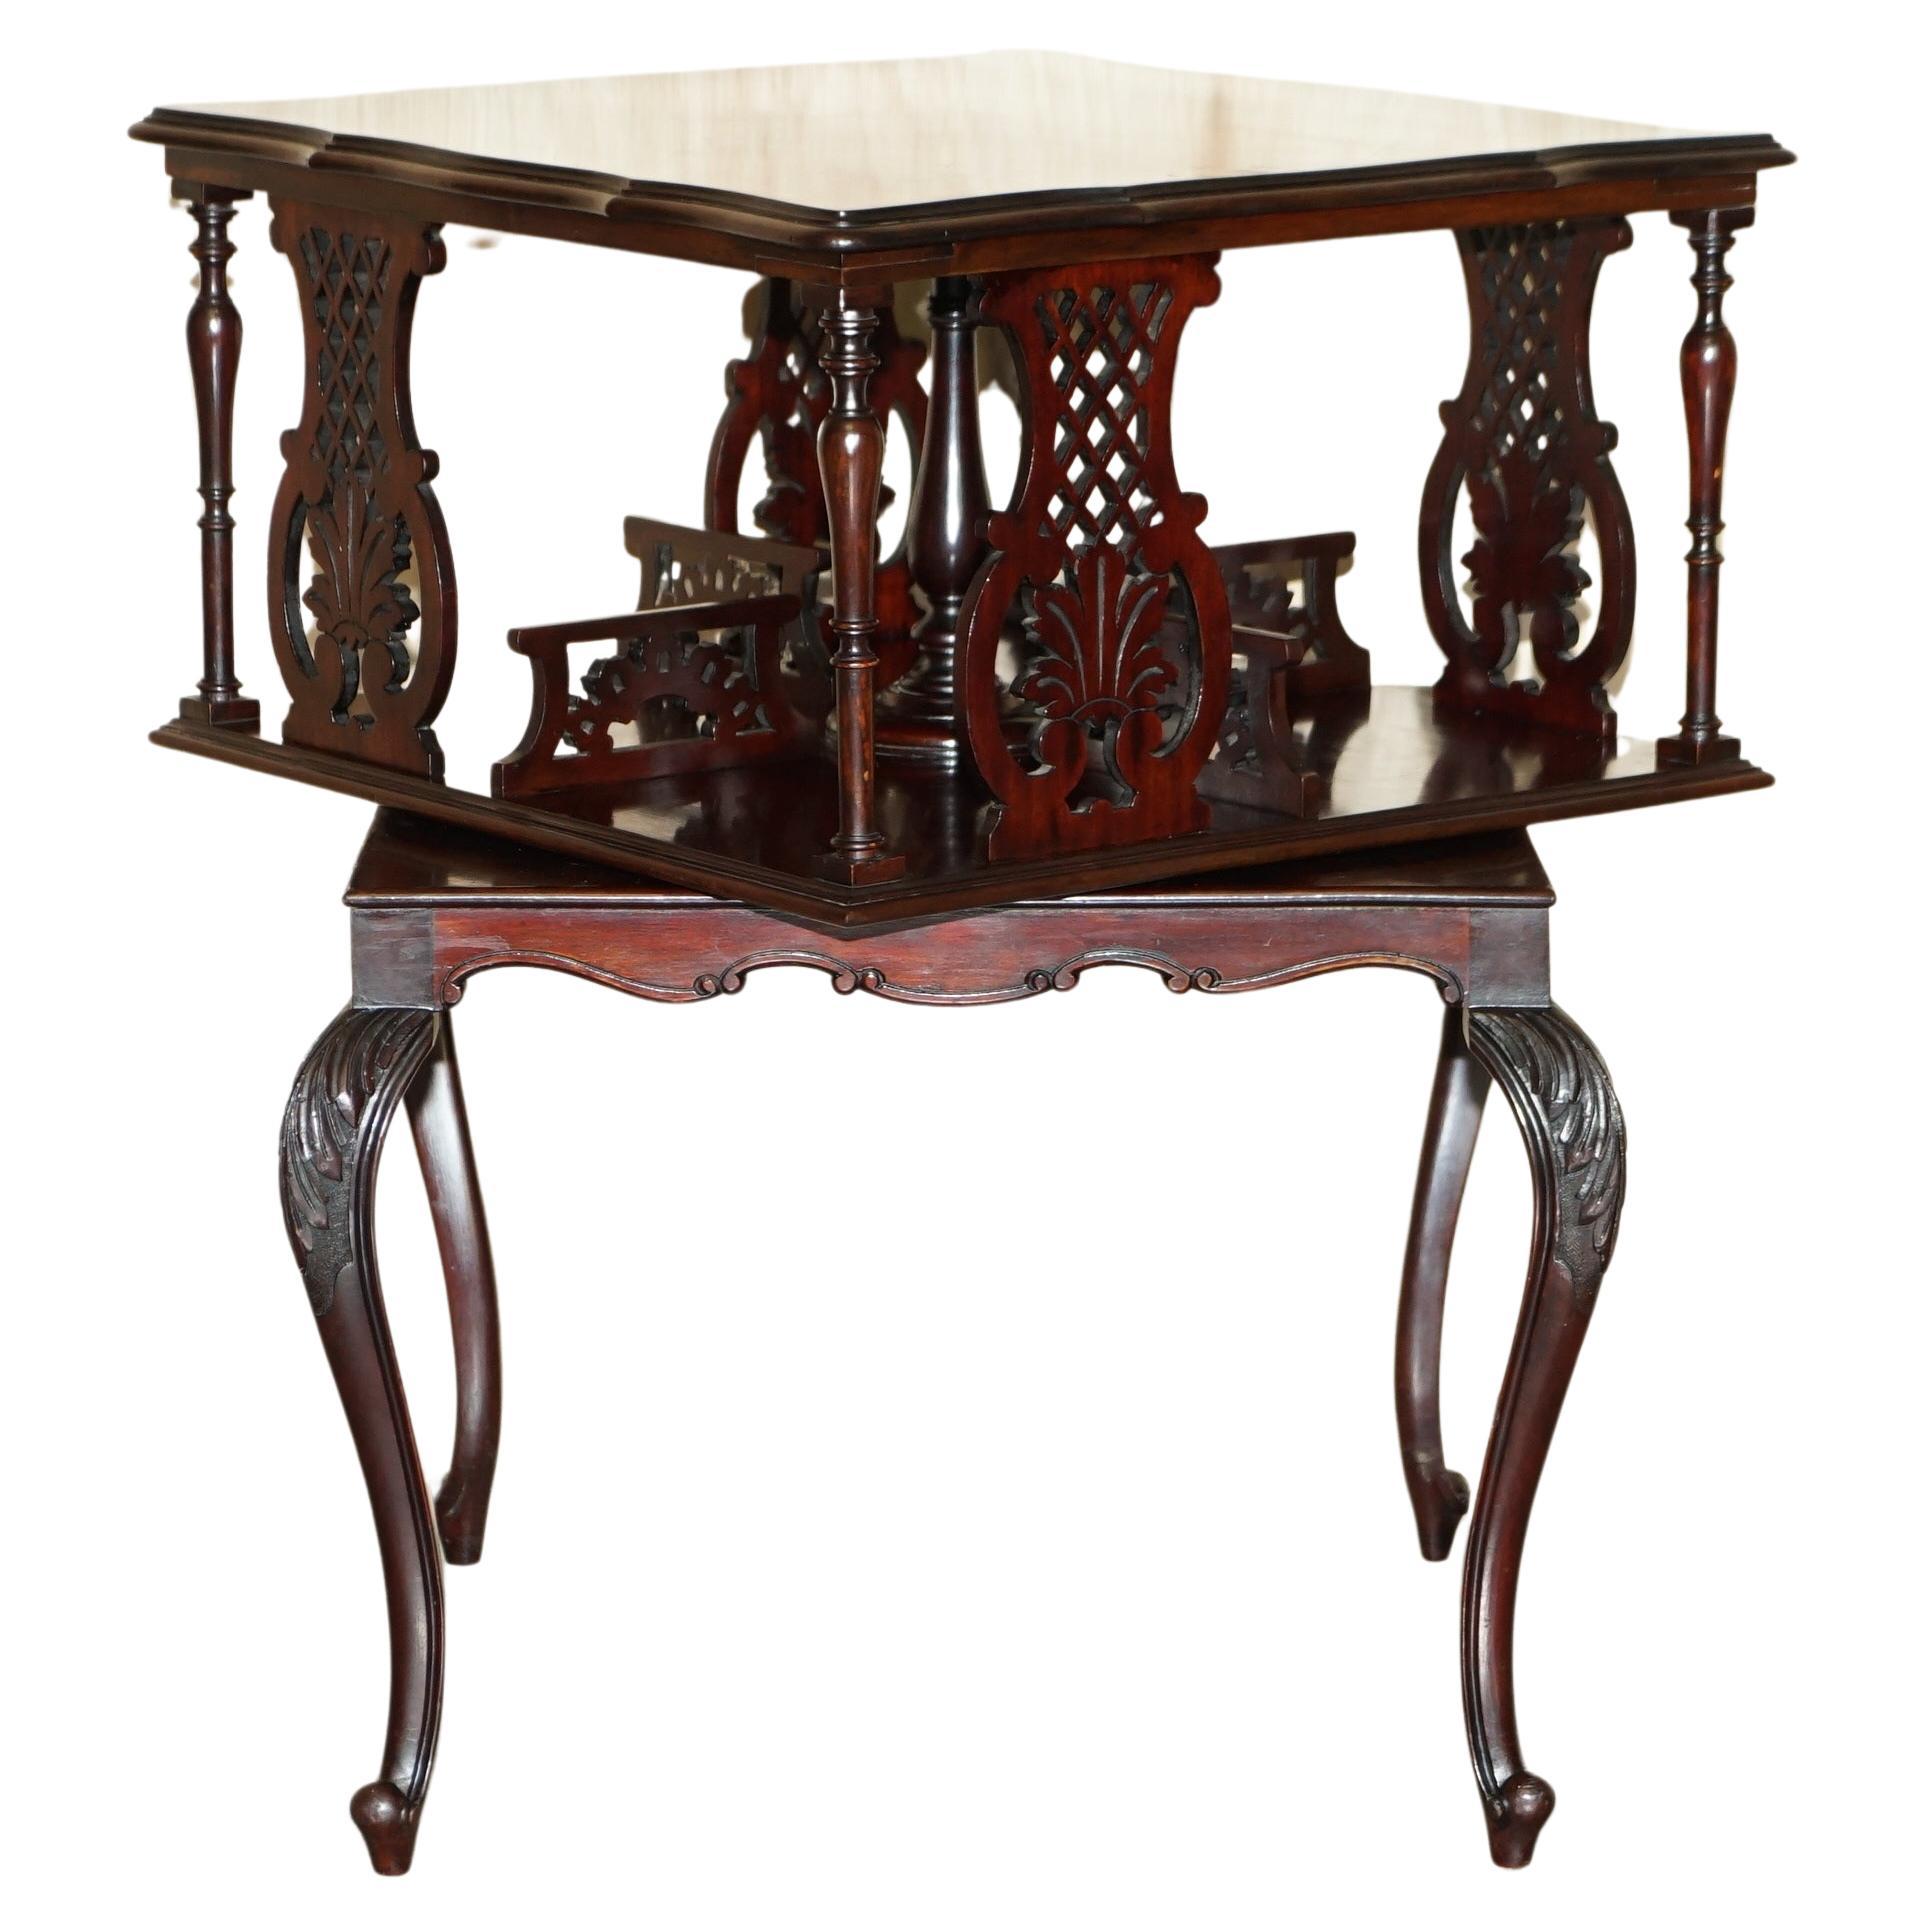 Table de bibliothèque ancienne et raffinée en bois de feuillus tournant du mouvement esthétique victorien